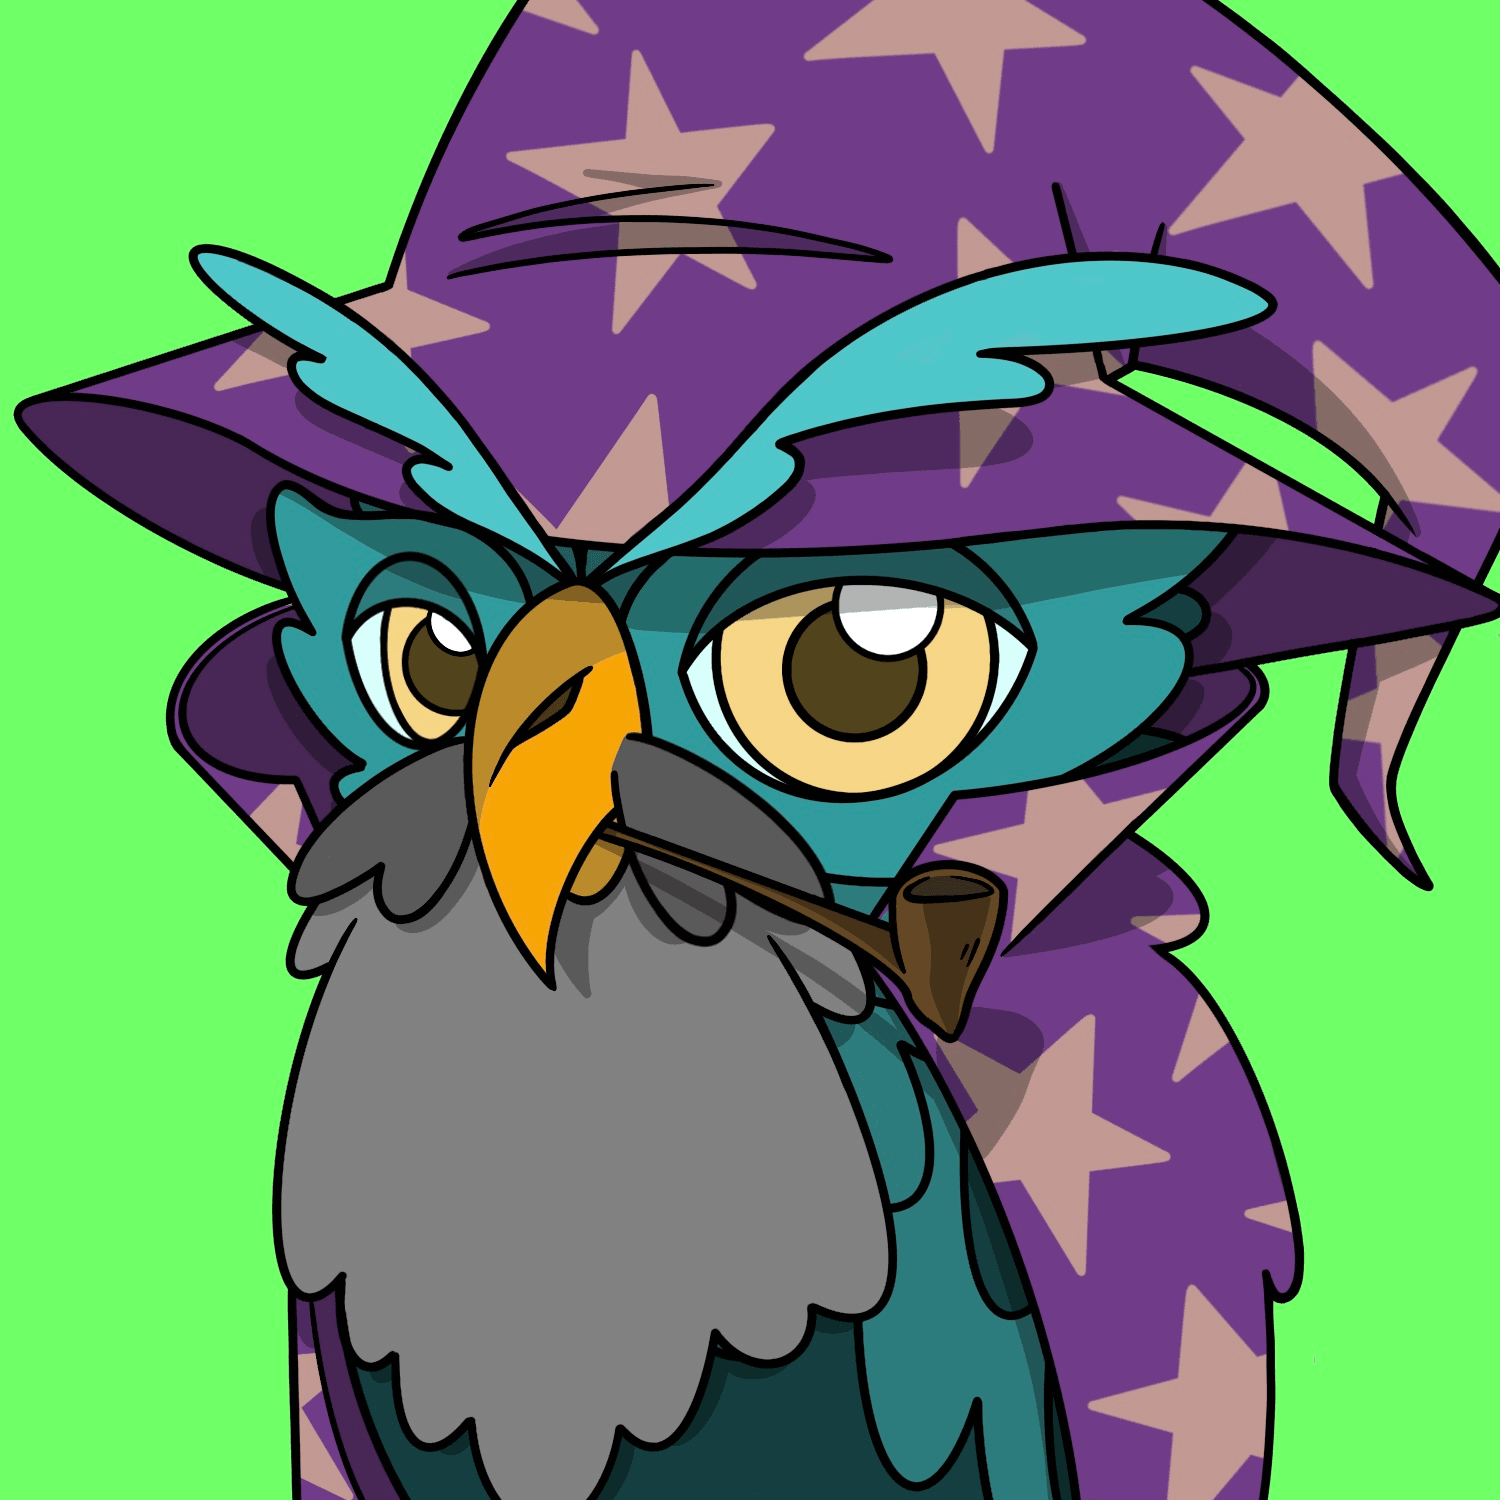 Wizard Owl